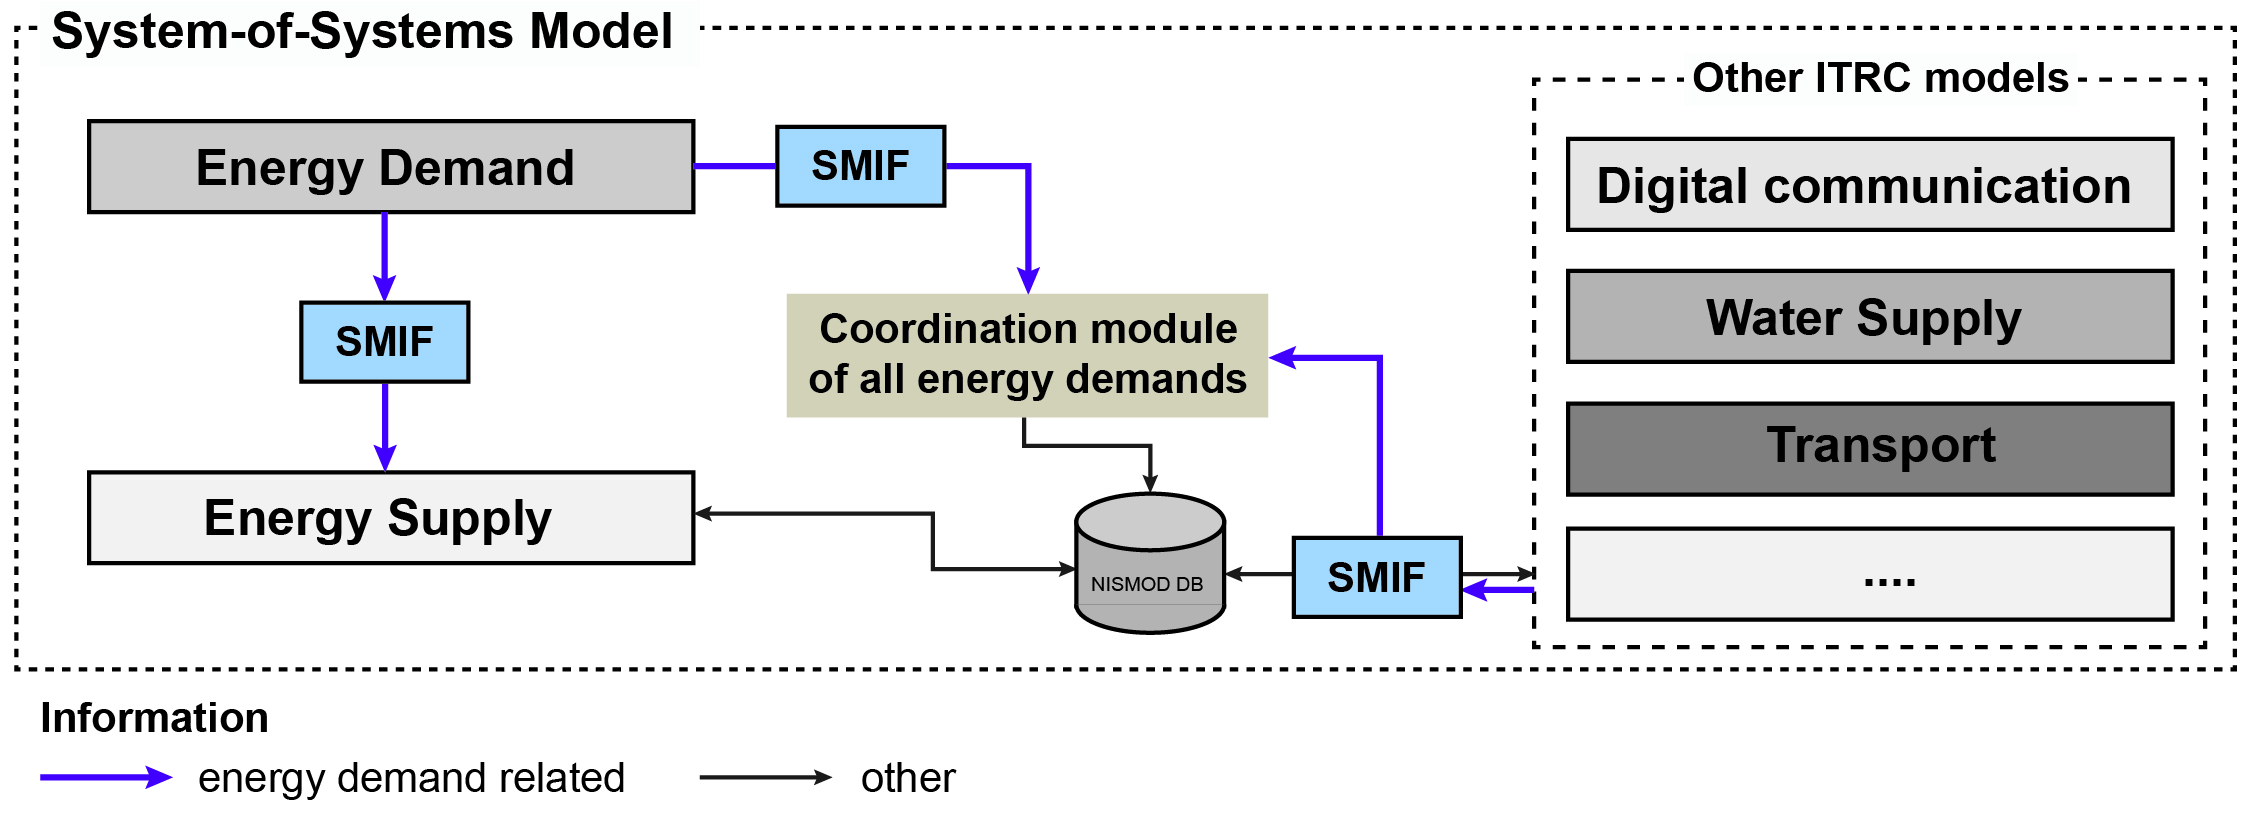 Image of model integration